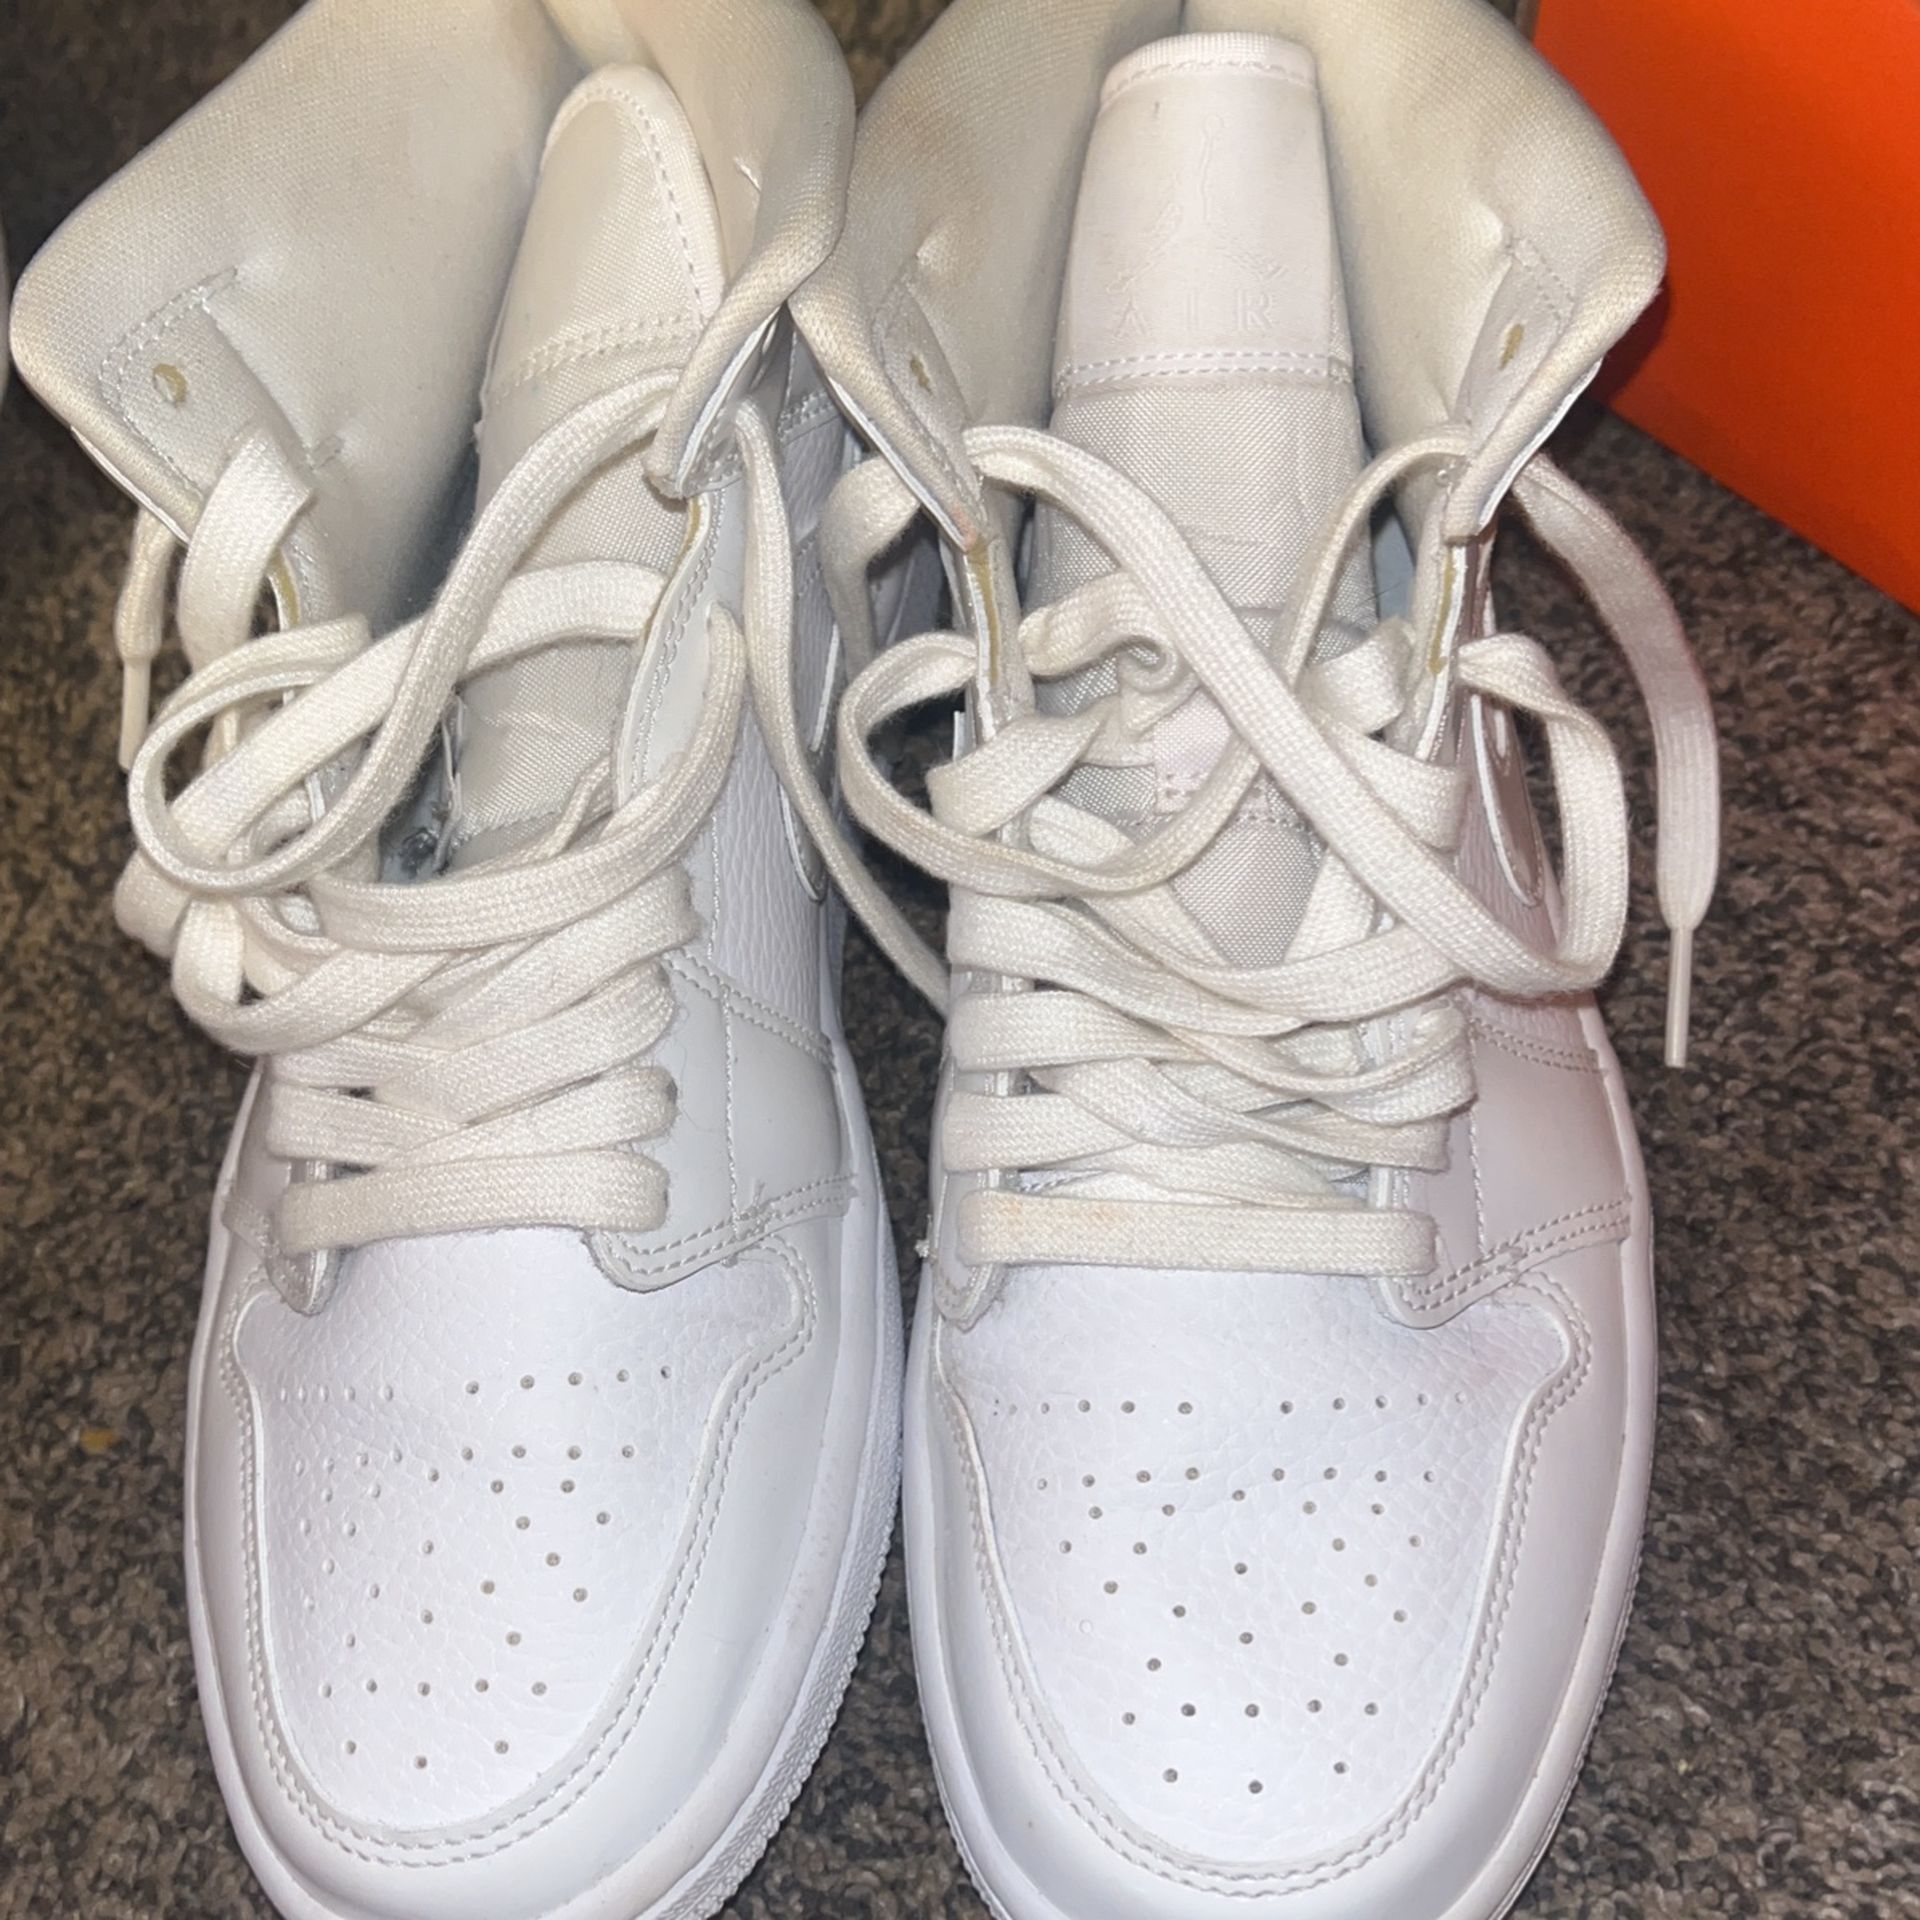 All White Air Jordan’s 7.5s